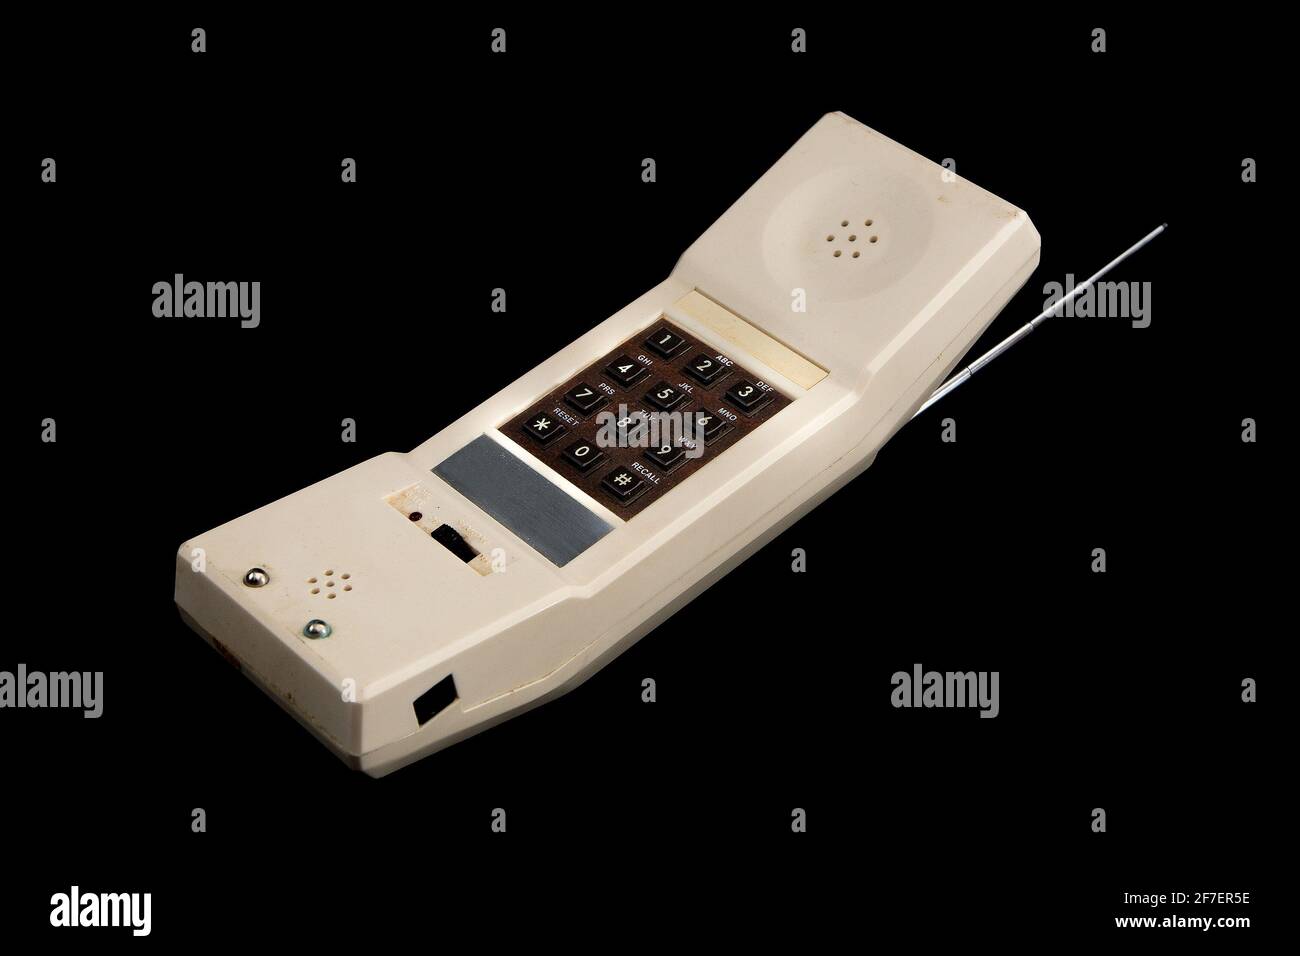 Un ancien téléphone sans fil blanc vintage des années 80 isolé sur noir.  Clavier marron et antenne argent visibles Photo Stock - Alamy